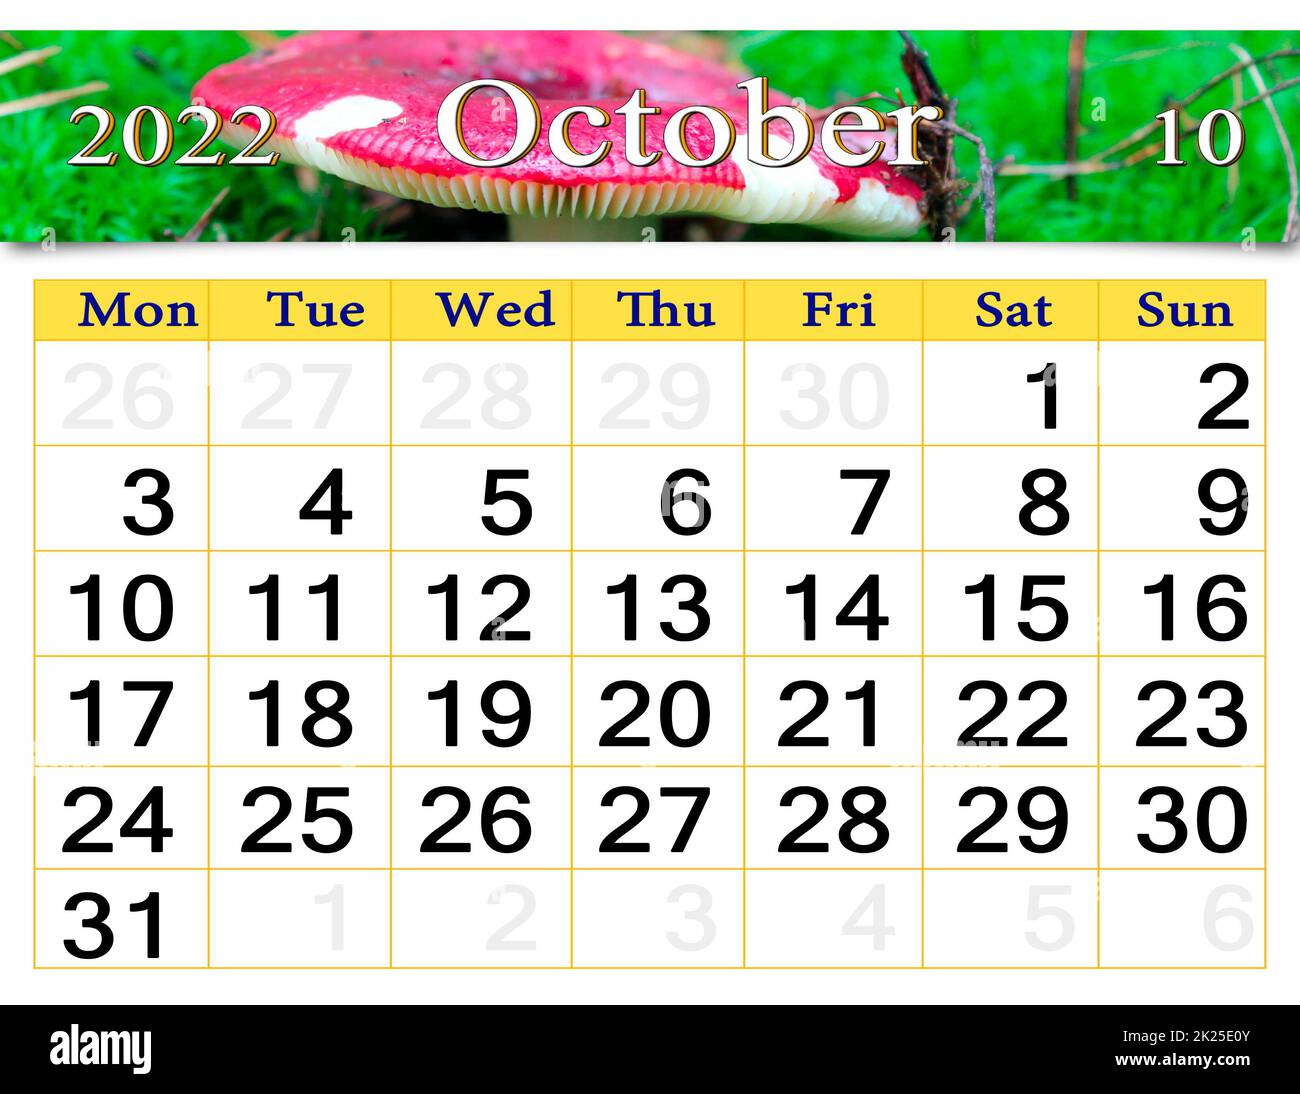 Calendario octubre 2022 Imágenes recortadas de stock - Alamy